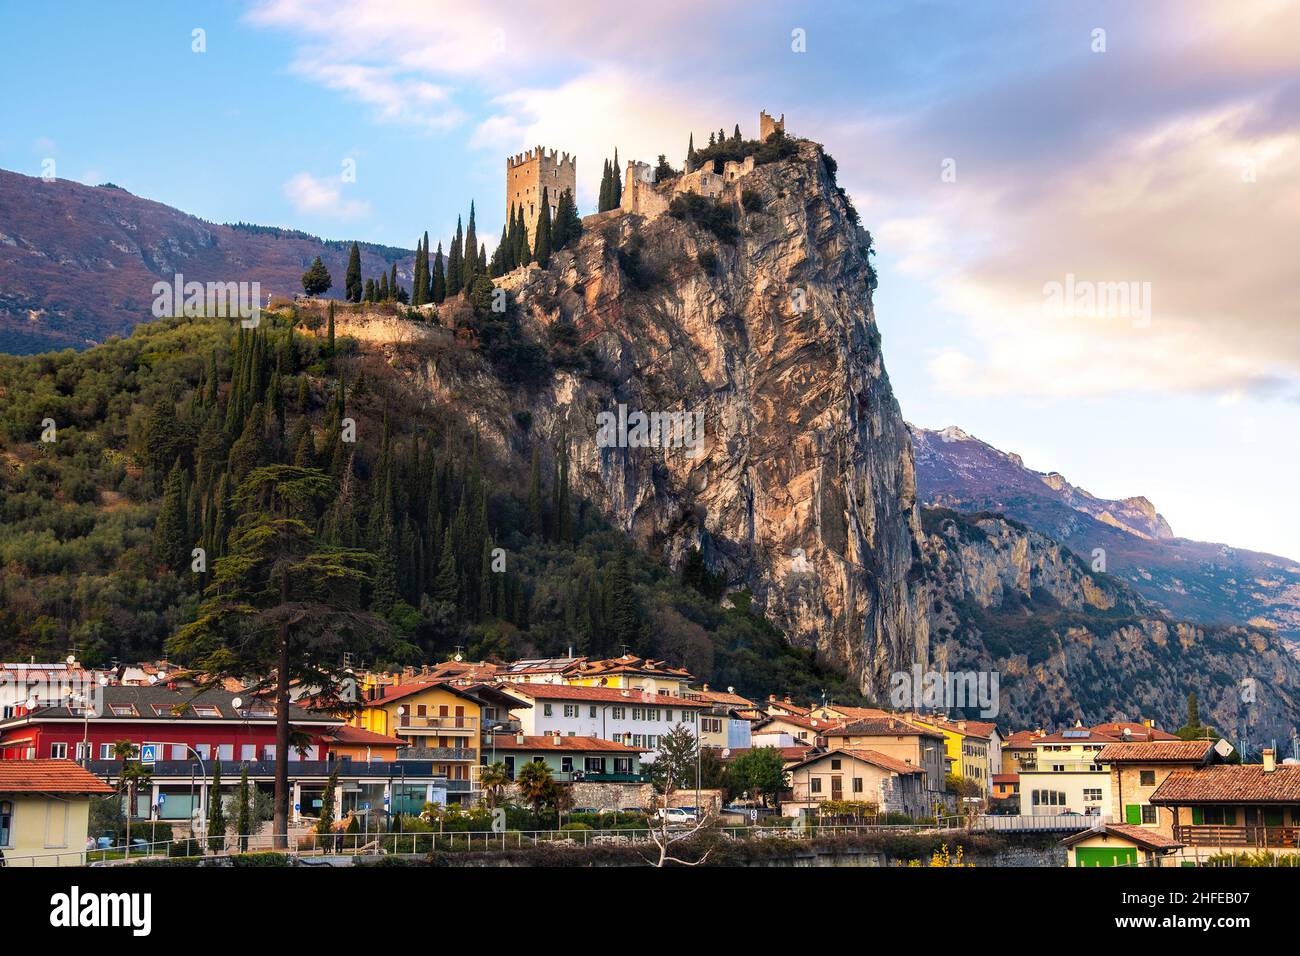 Arco Stadt mit Schloss auf felsigen Klippen in Trentino-Südtirol - Provinz Trient - Italien Wahrzeichen Stockfoto